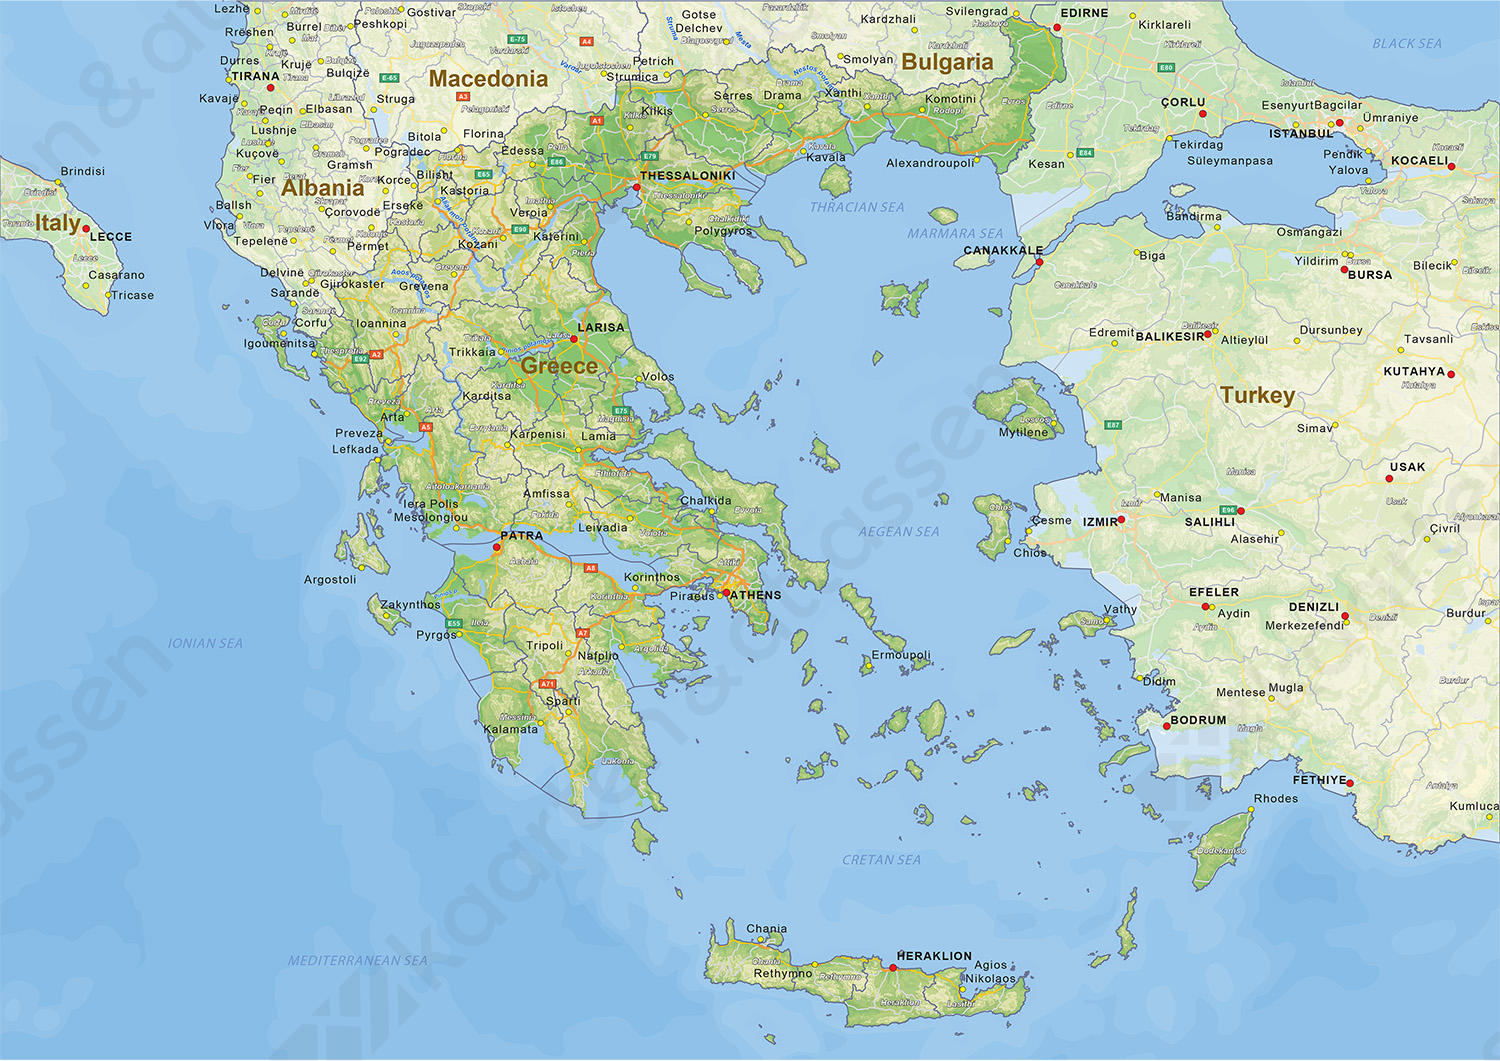 Pardon knal bemanning Digitale Natuurkundige landkaart Griekenland 1435 | Kaarten en Atlassen.nl